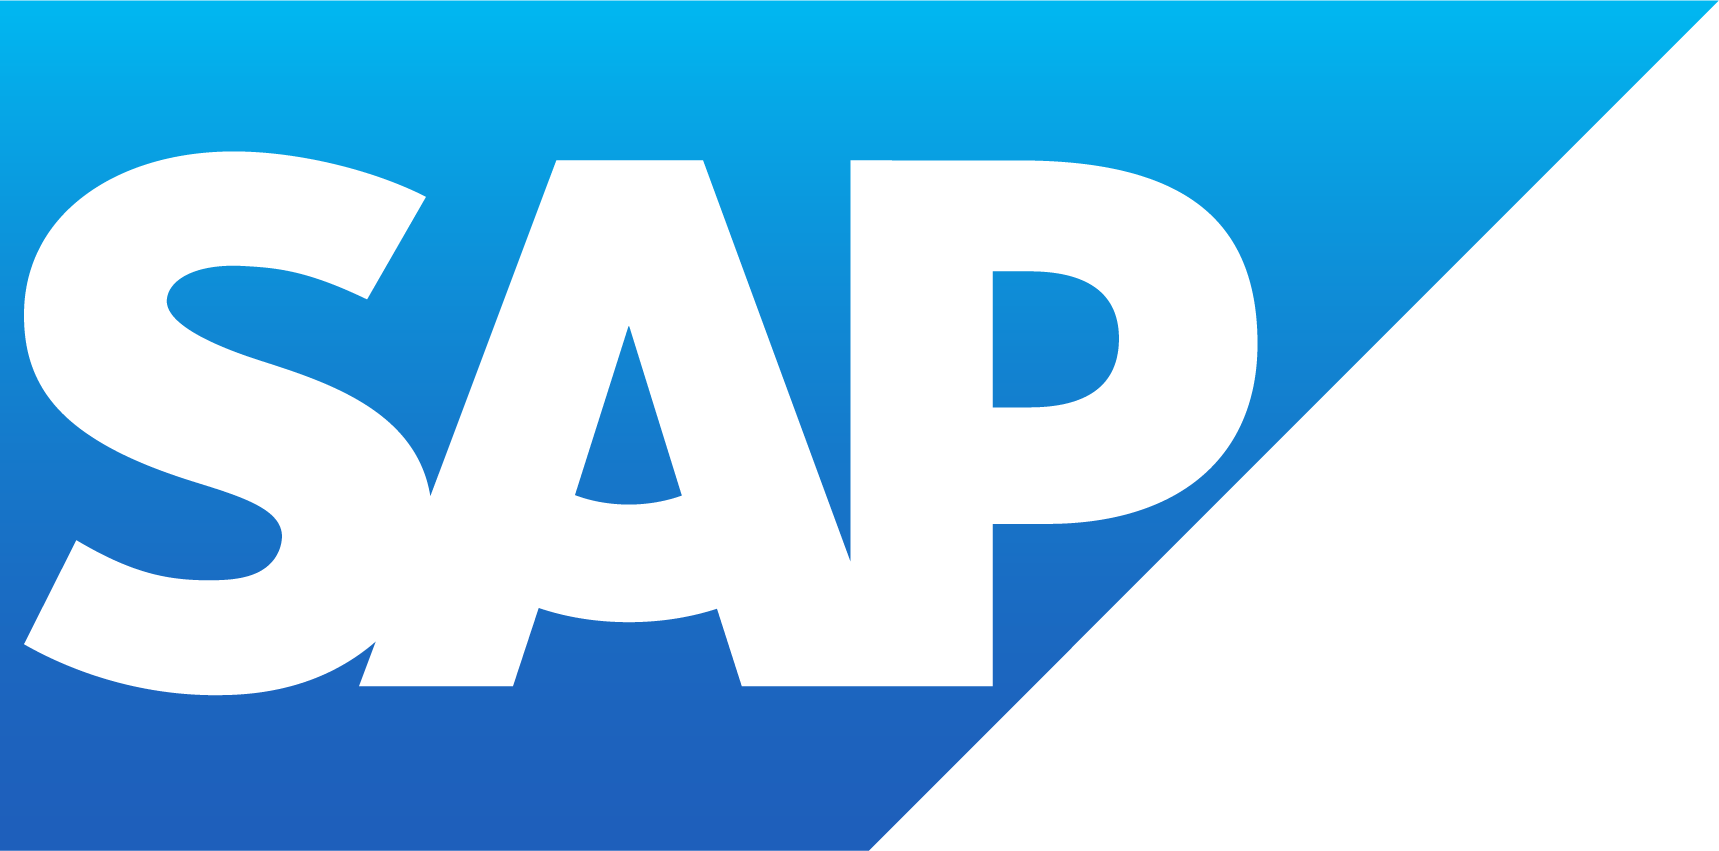 Logotipo de SAP